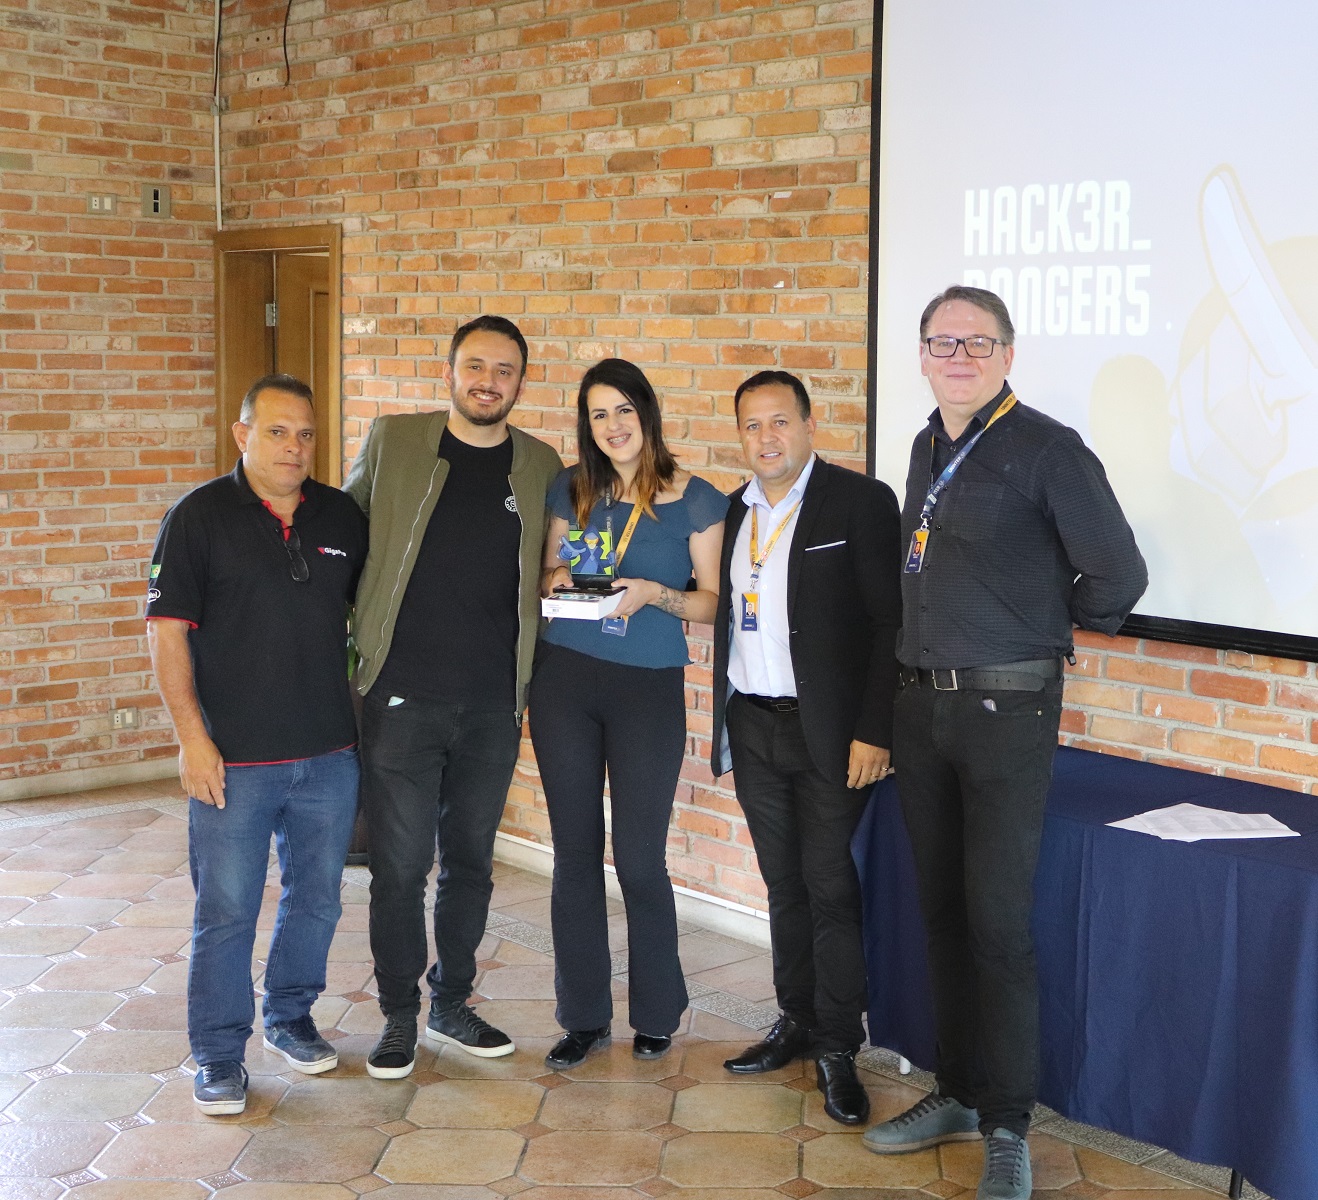 Uninter premia vencedores da terceira temporada do Hacker Rangers